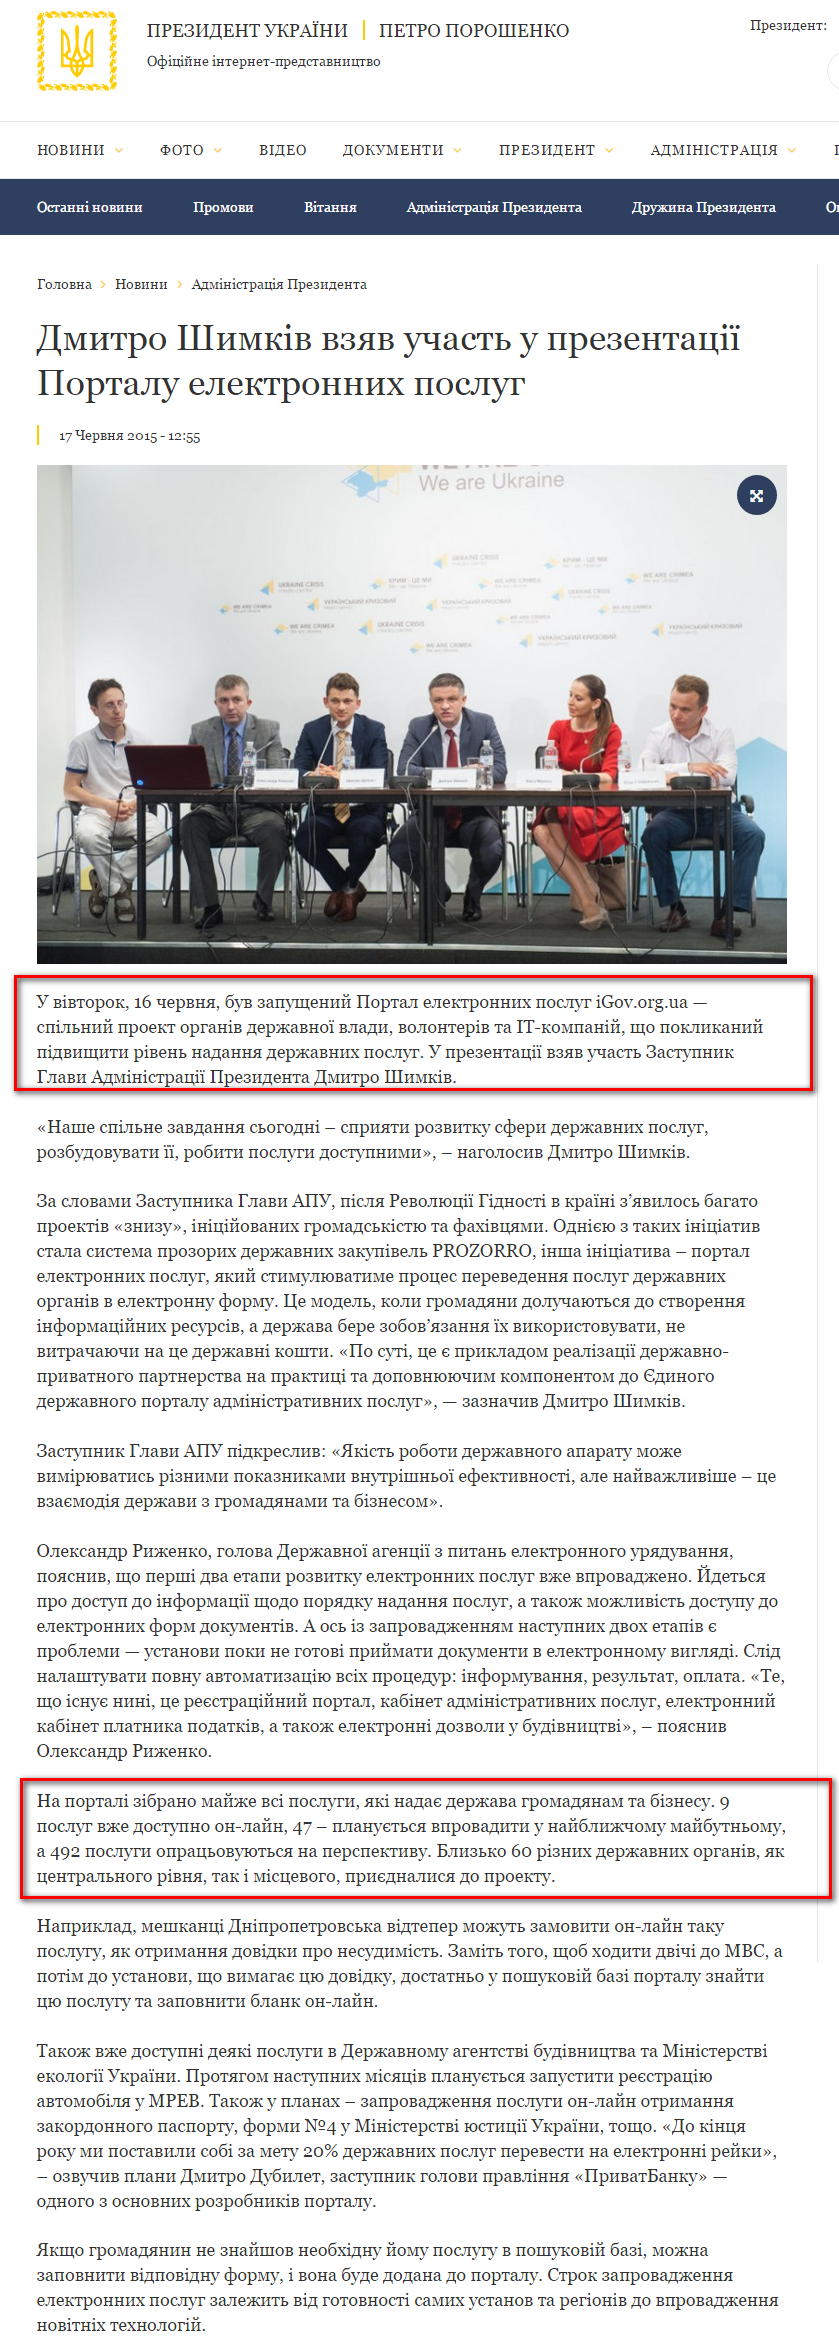 http://www.president.gov.ua/news/dmitro-shimkiv-vzyav-uchast-u-prezentaciyi-portalu-elektronn-35516